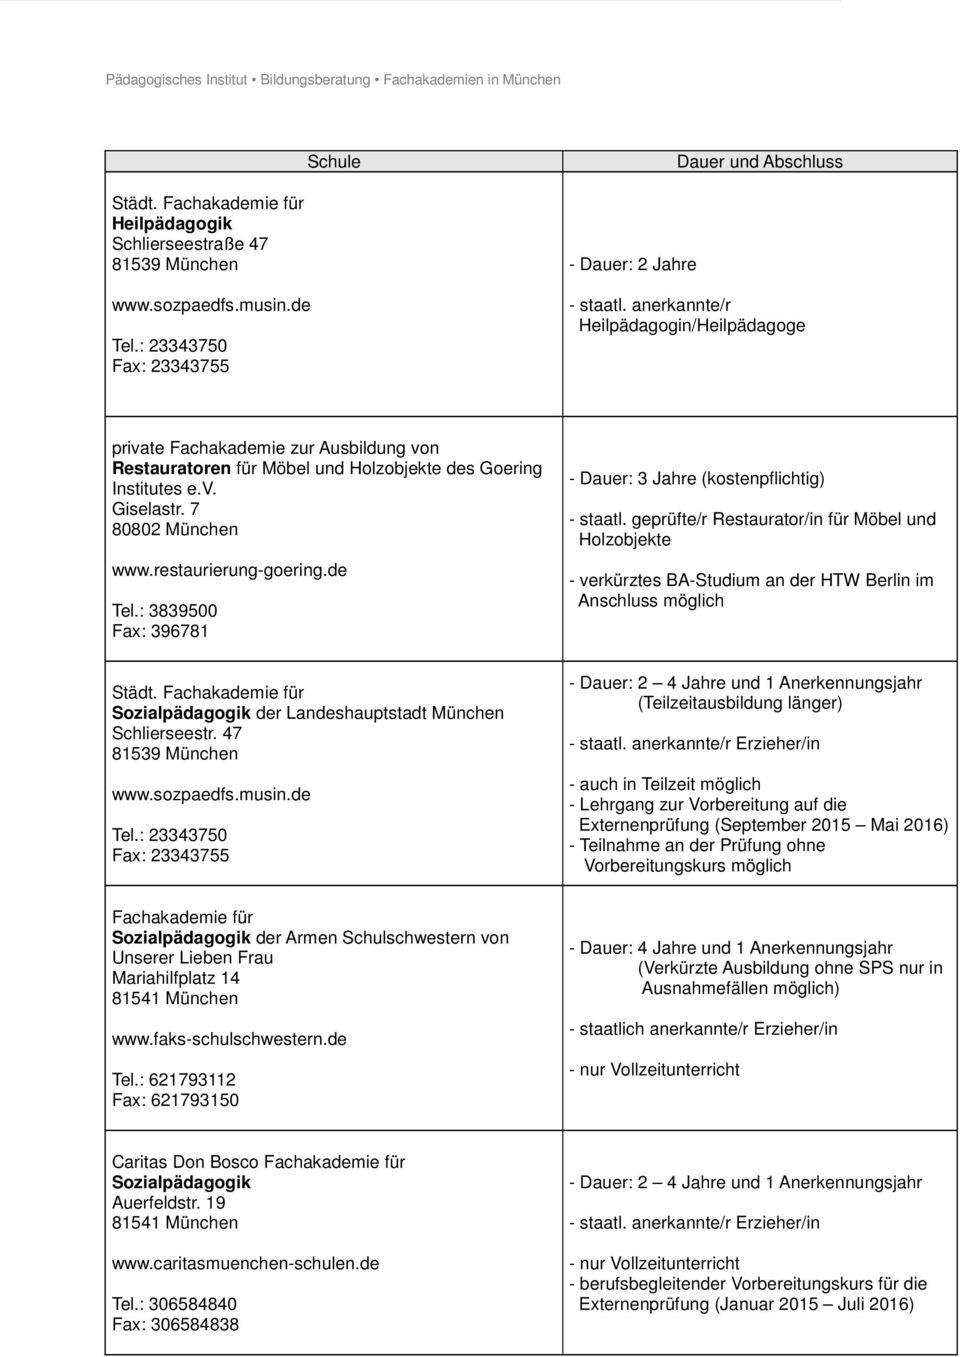 restaurierung-goering.de Tel.: 3839500 Fax: 396781 - Dauer: 3 Jahre (kostenpflichtig) - staatl.